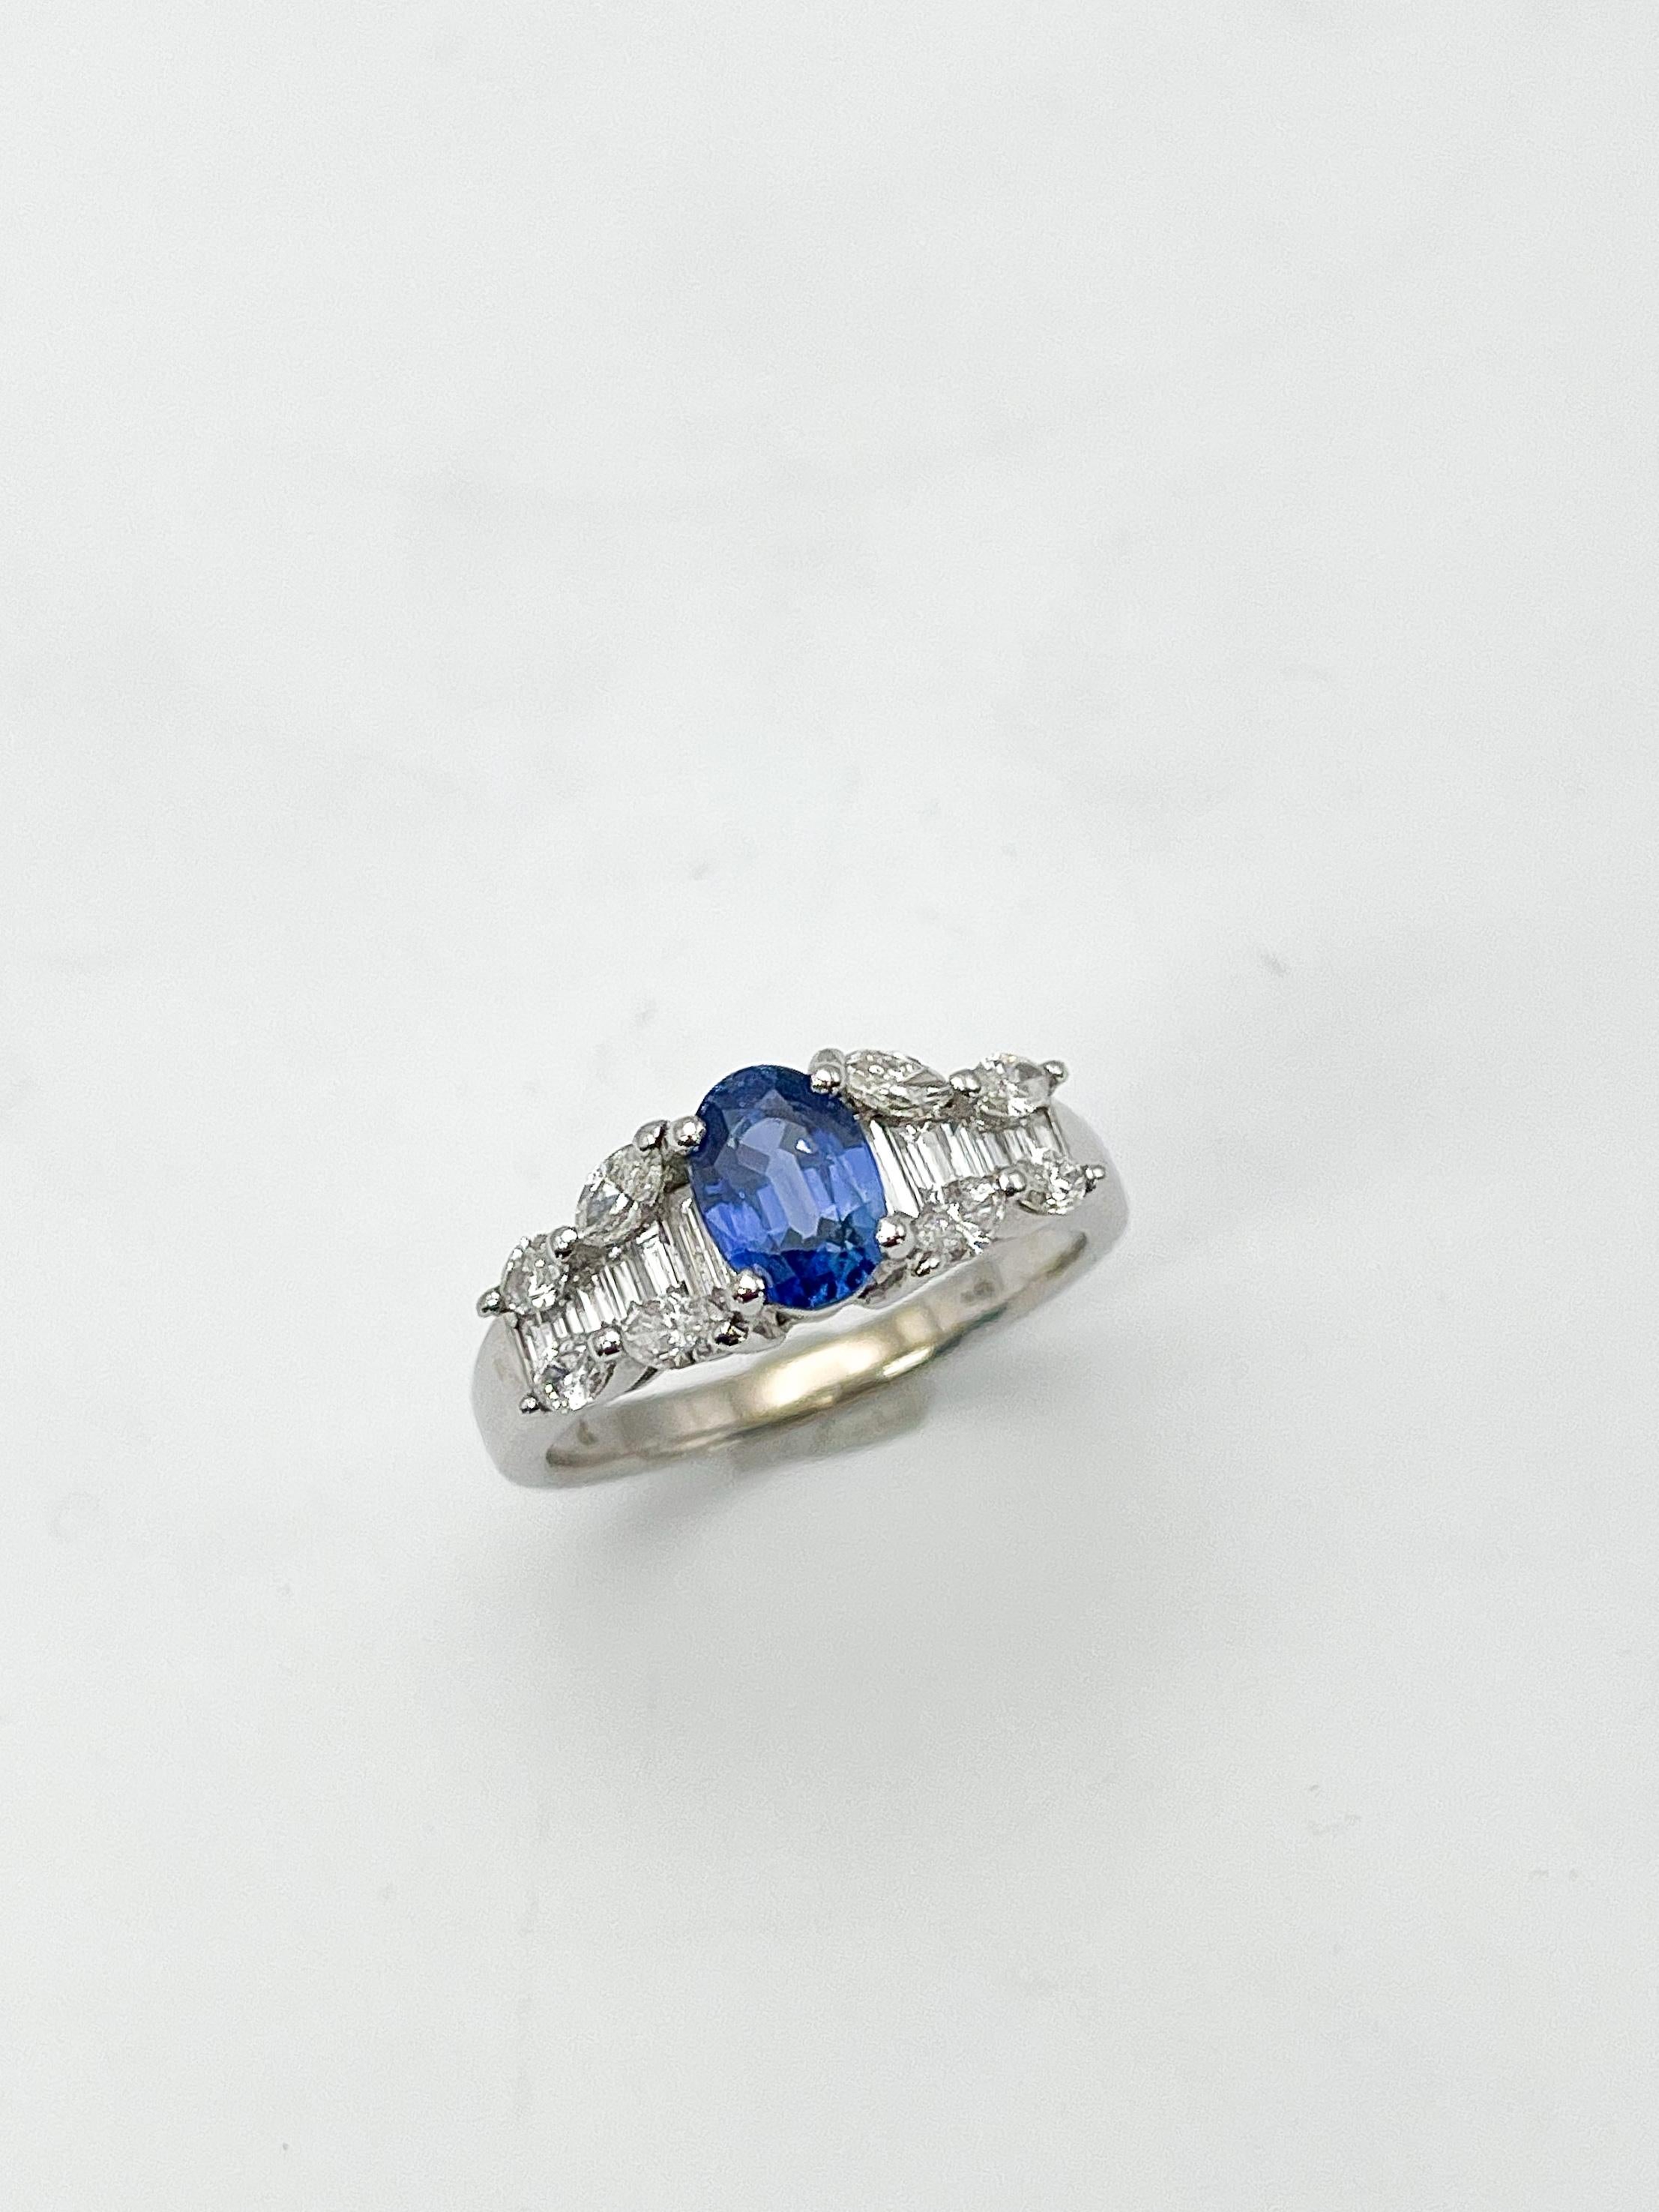 Ring aus 14k Weißgold mit Diamanten und blauem ovalen Saphir. Dieser Ring hat 8 Diamanten im Marquiseschliff und 14 Baguette-Diamanten zusammen mit dem Saphir. Der Saphir misst 4,7x6,8 mm, der Ring hat die Größe 5 3/4, das Band ist 2 mm breit und